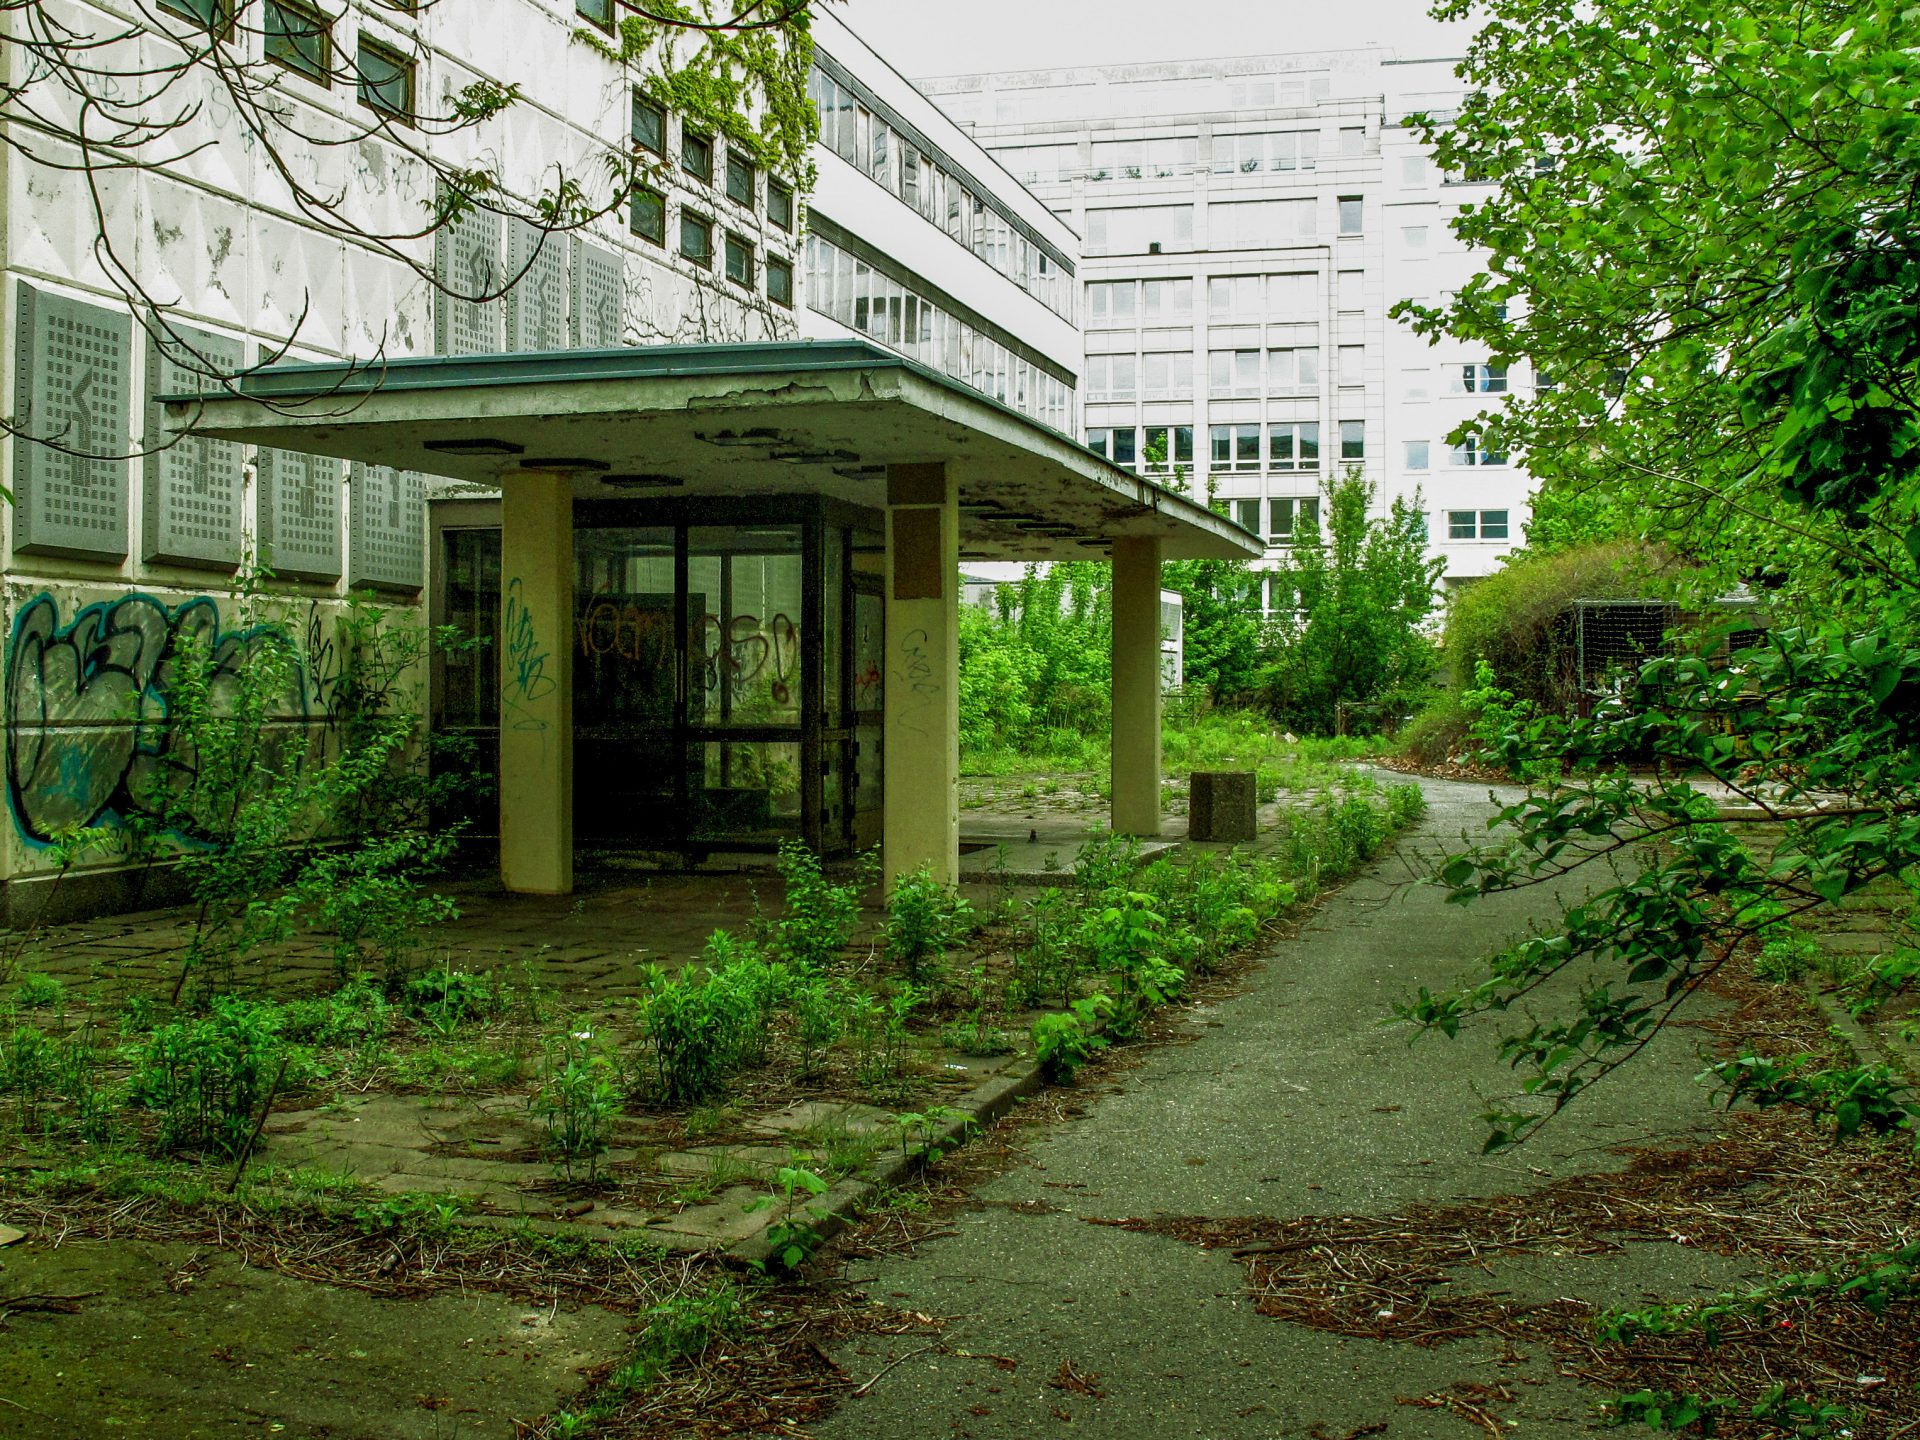 plants overgrowing concrete building, pflanzen überwuchern Gebäude in Berlin